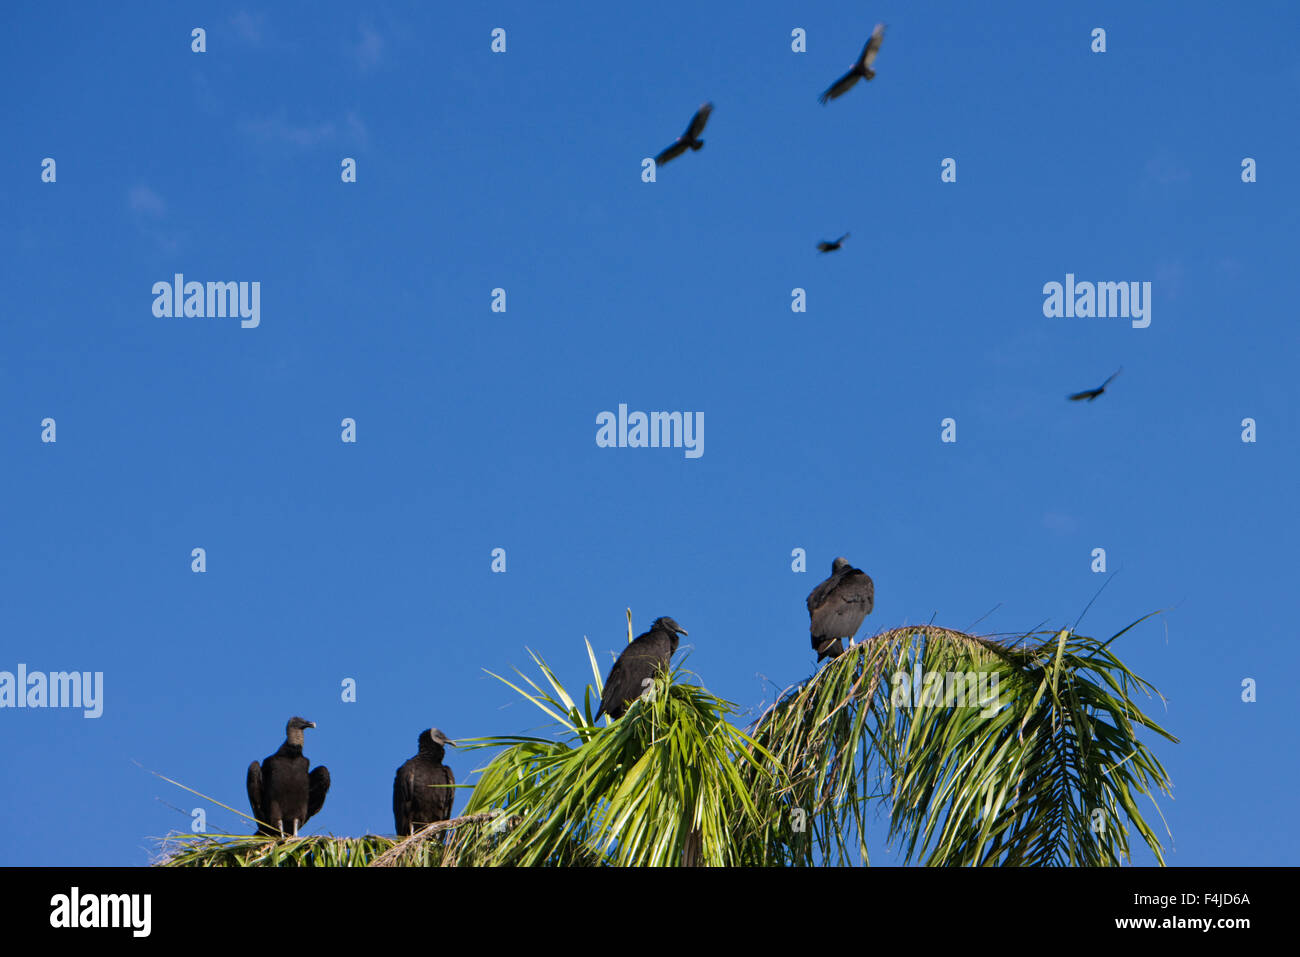 Amerika amerikanische schwarze Geier Vogel Raubvogel Farbe Bild Everglades Nationalpark Florida horizontale mittlere Gruppe von Menschen Stockfoto